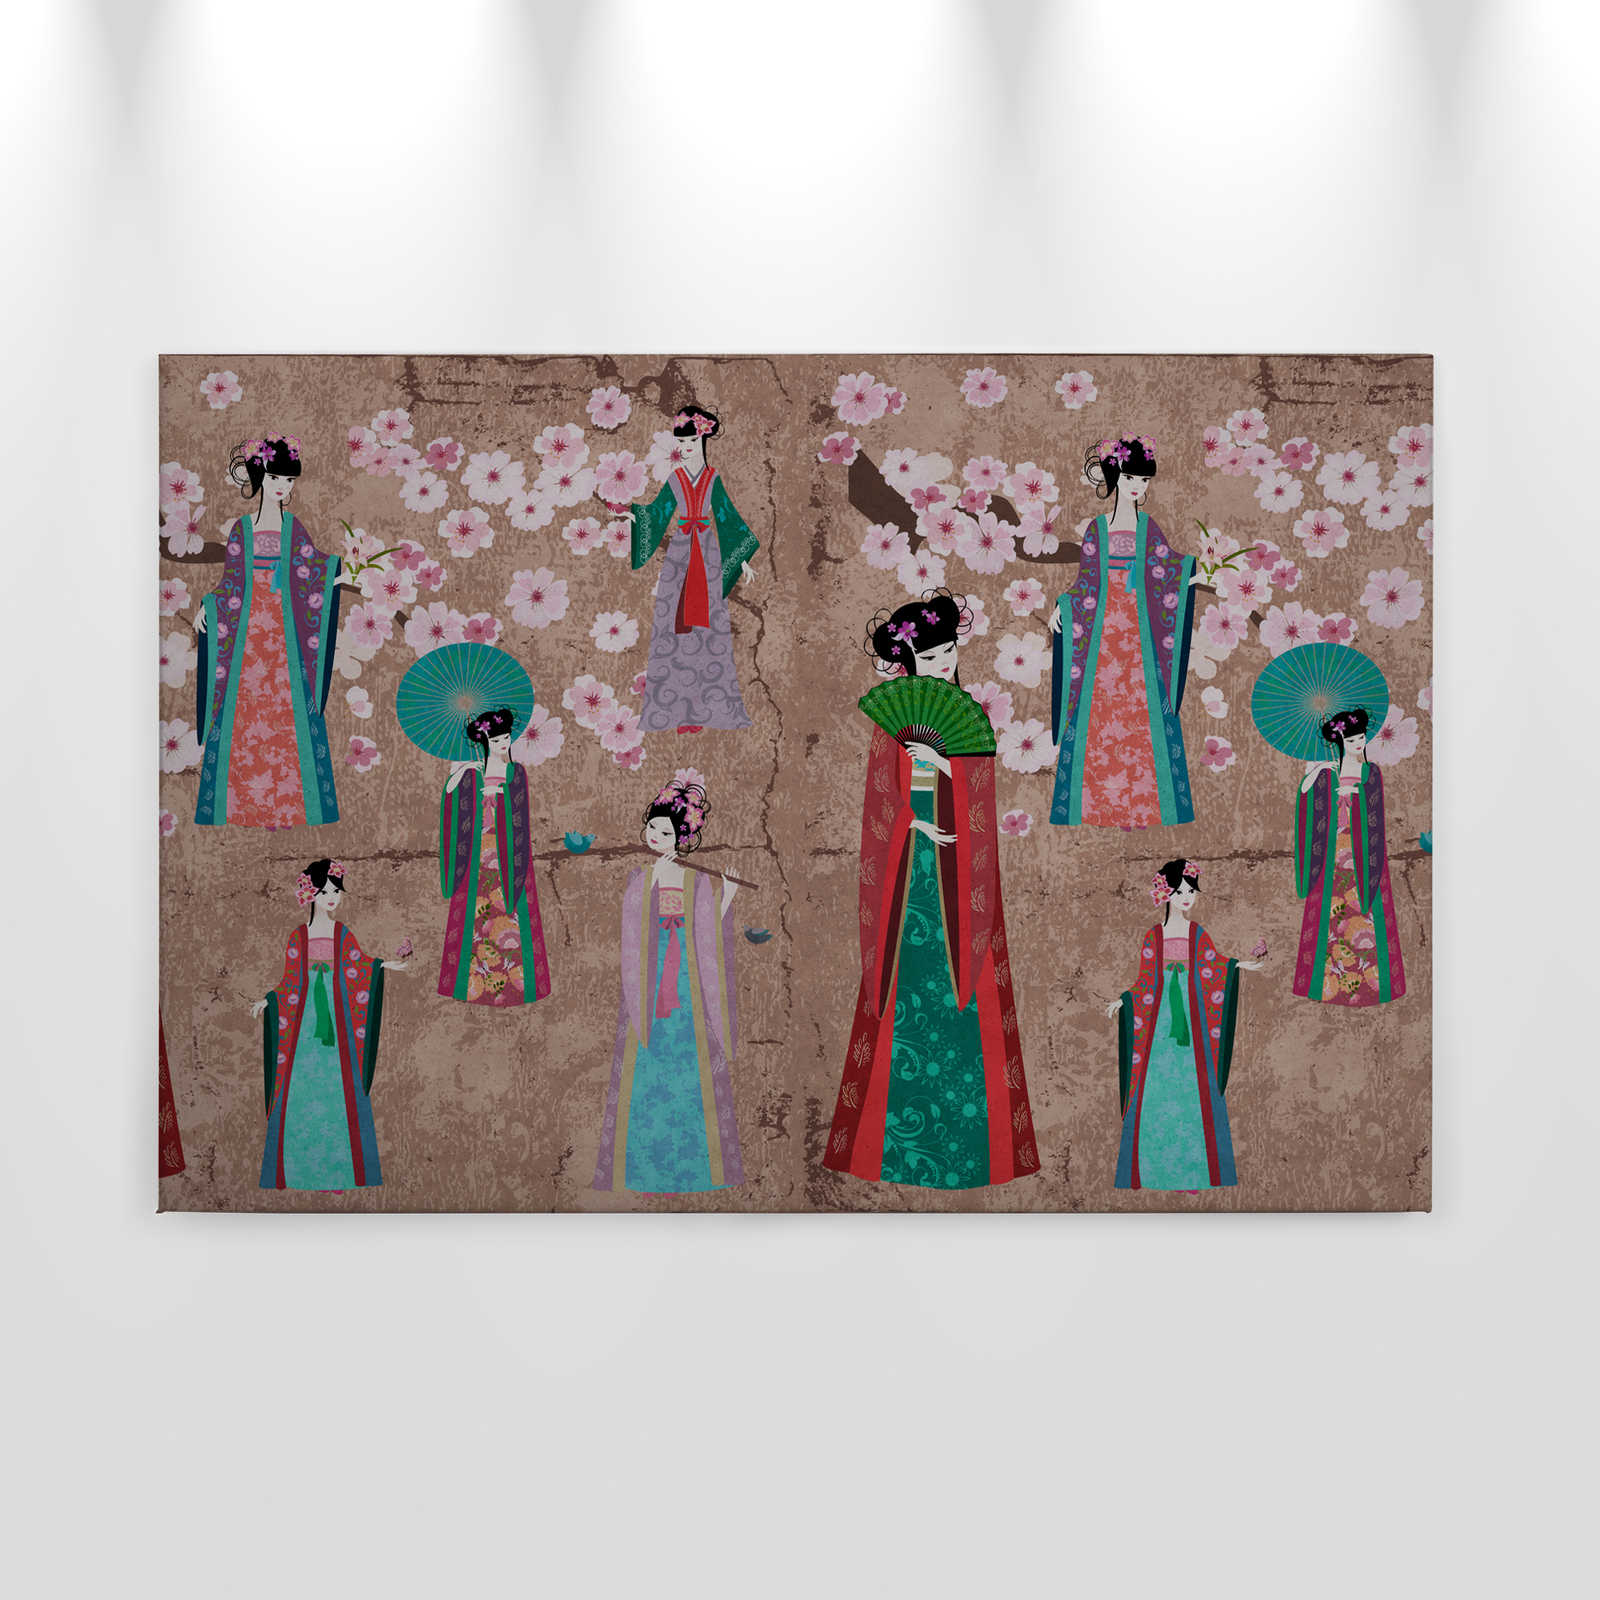             Pintura en lienzo Japón Comic con cerezos en flor | beige, azul - 0,90 m x 0,60 m
        